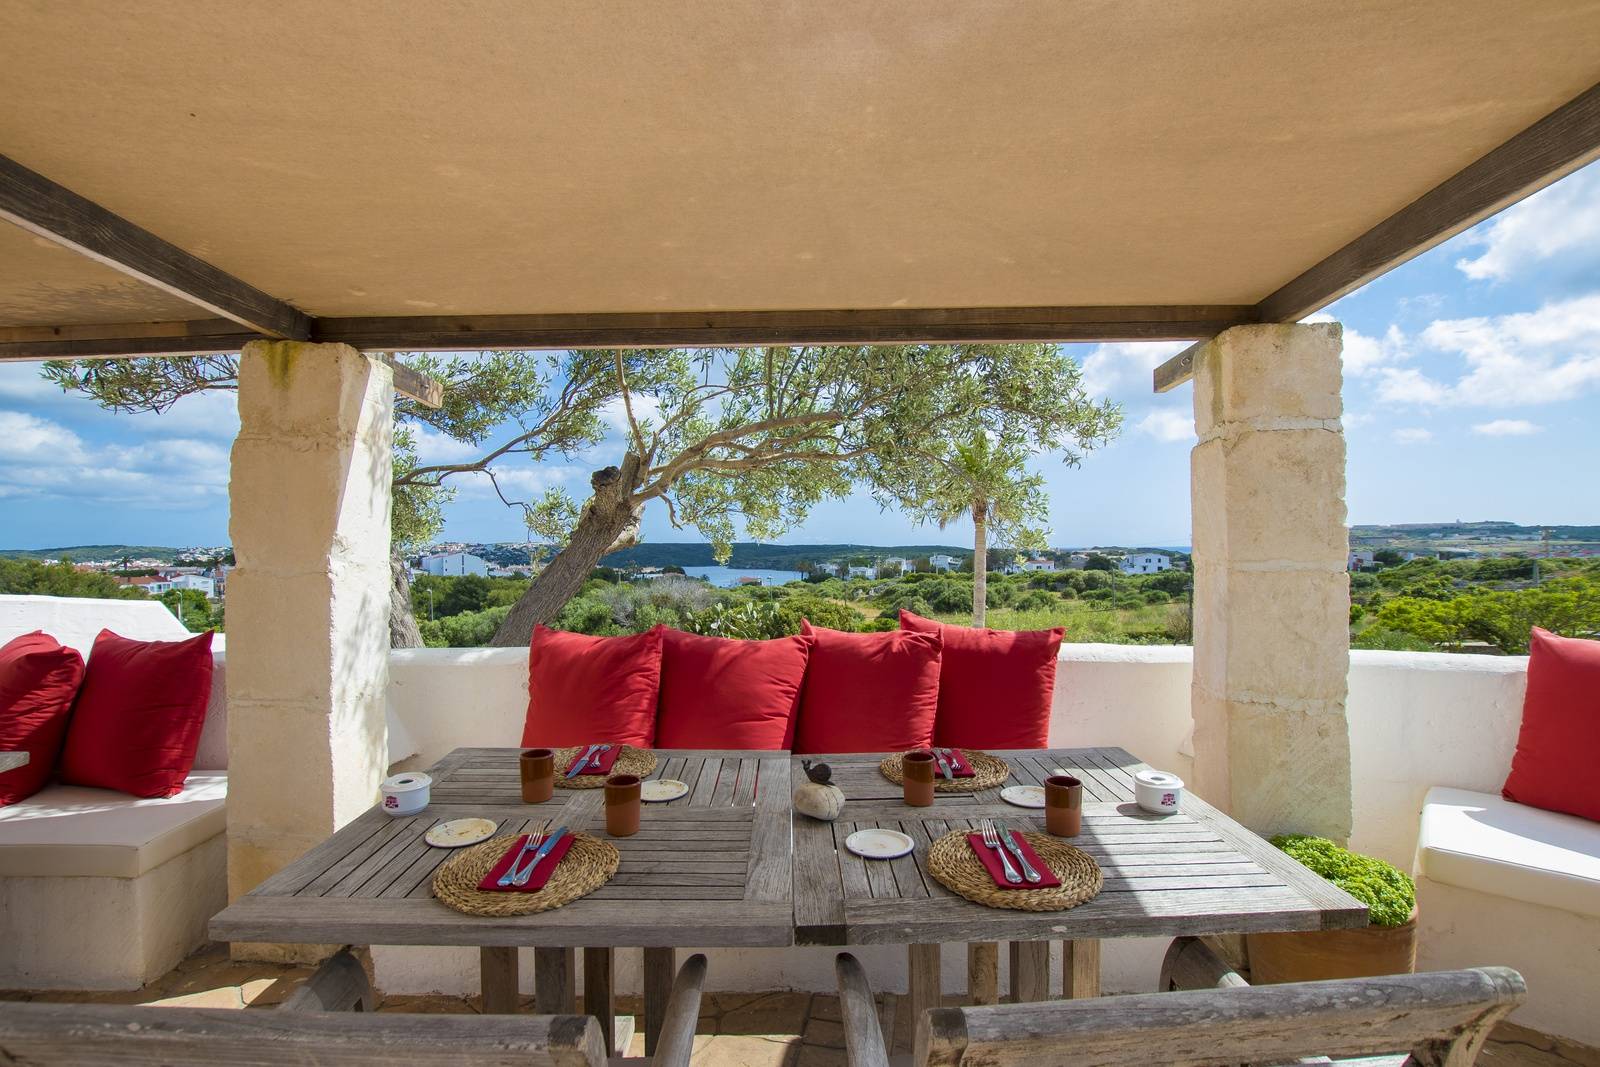 Hotel en venta en una antigua finca en Es Castell en Menorca